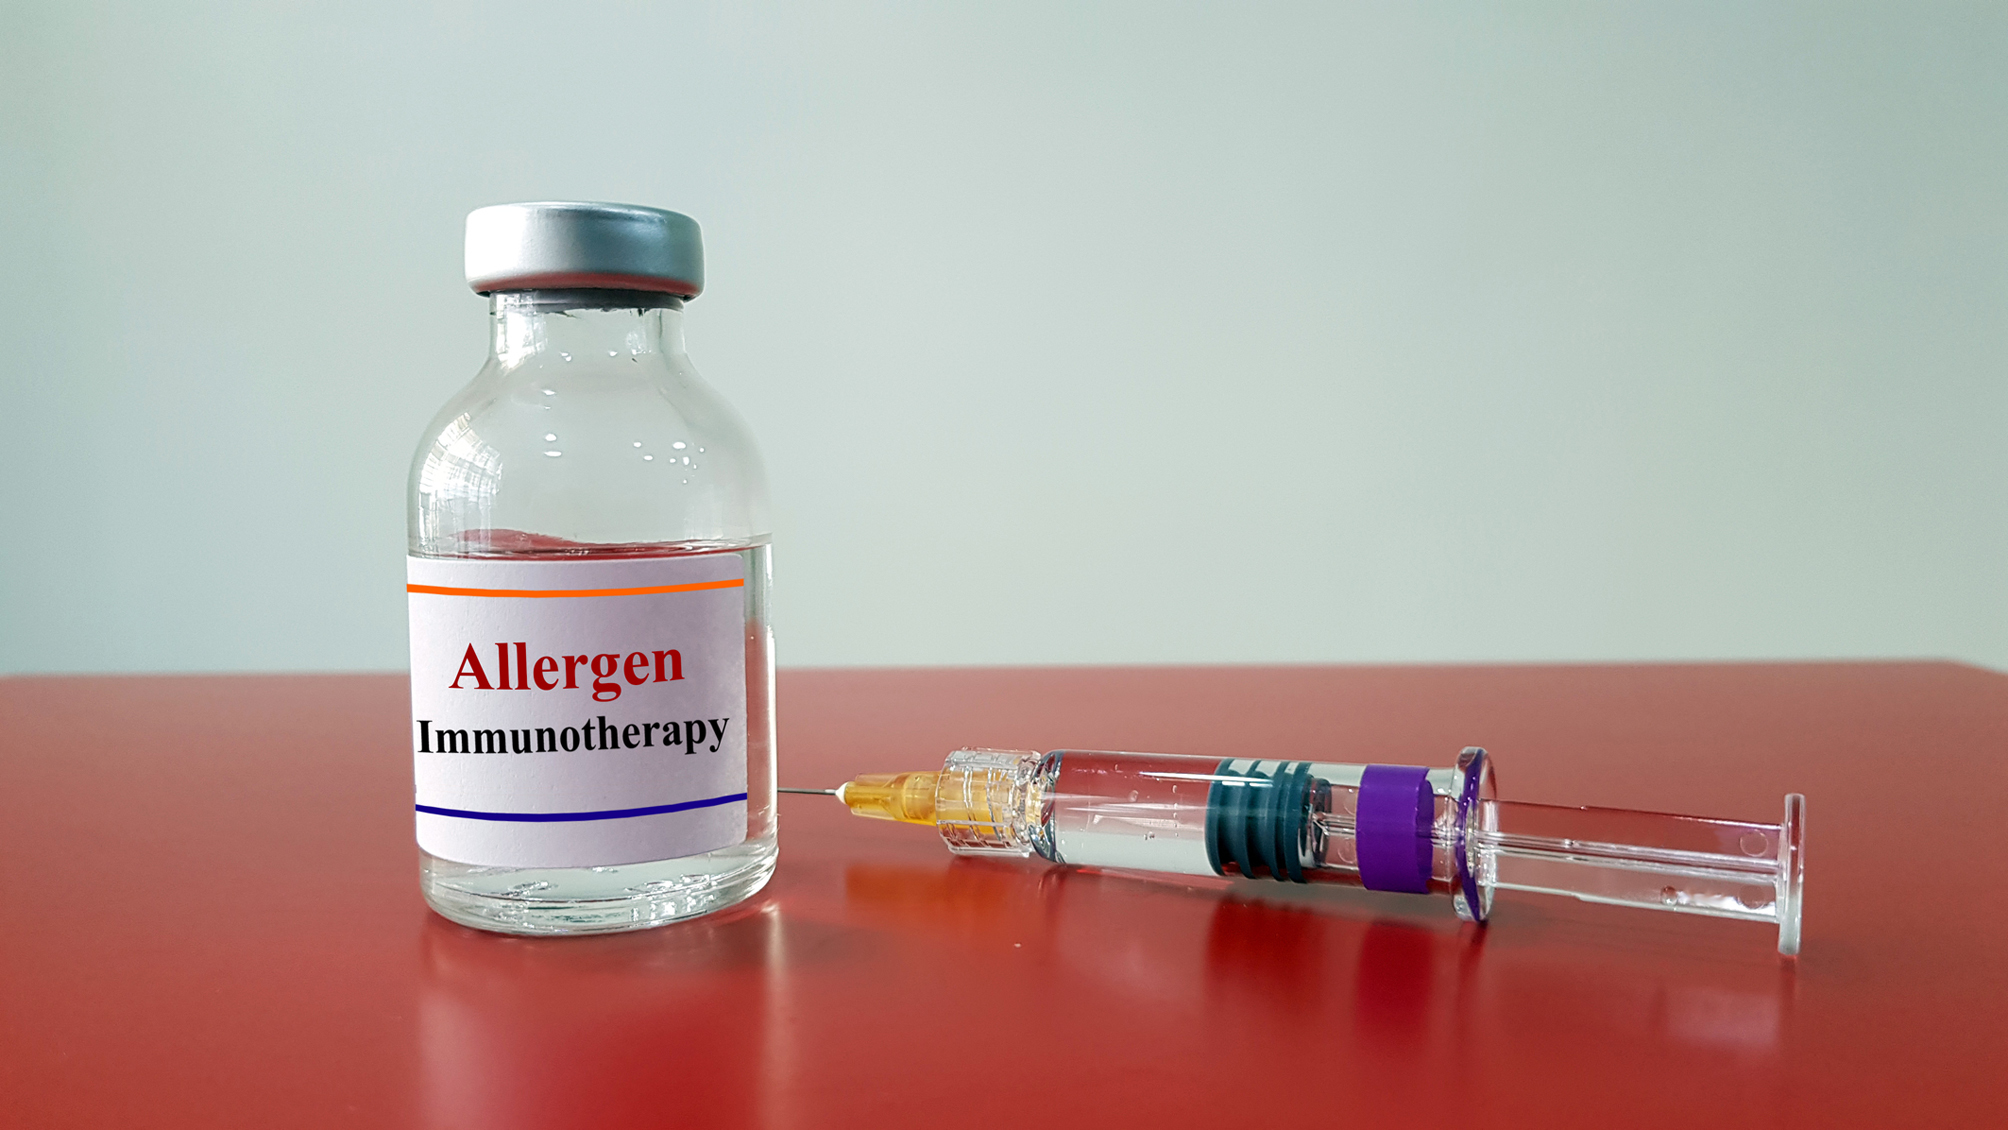 Allergen-specific immunotherapy